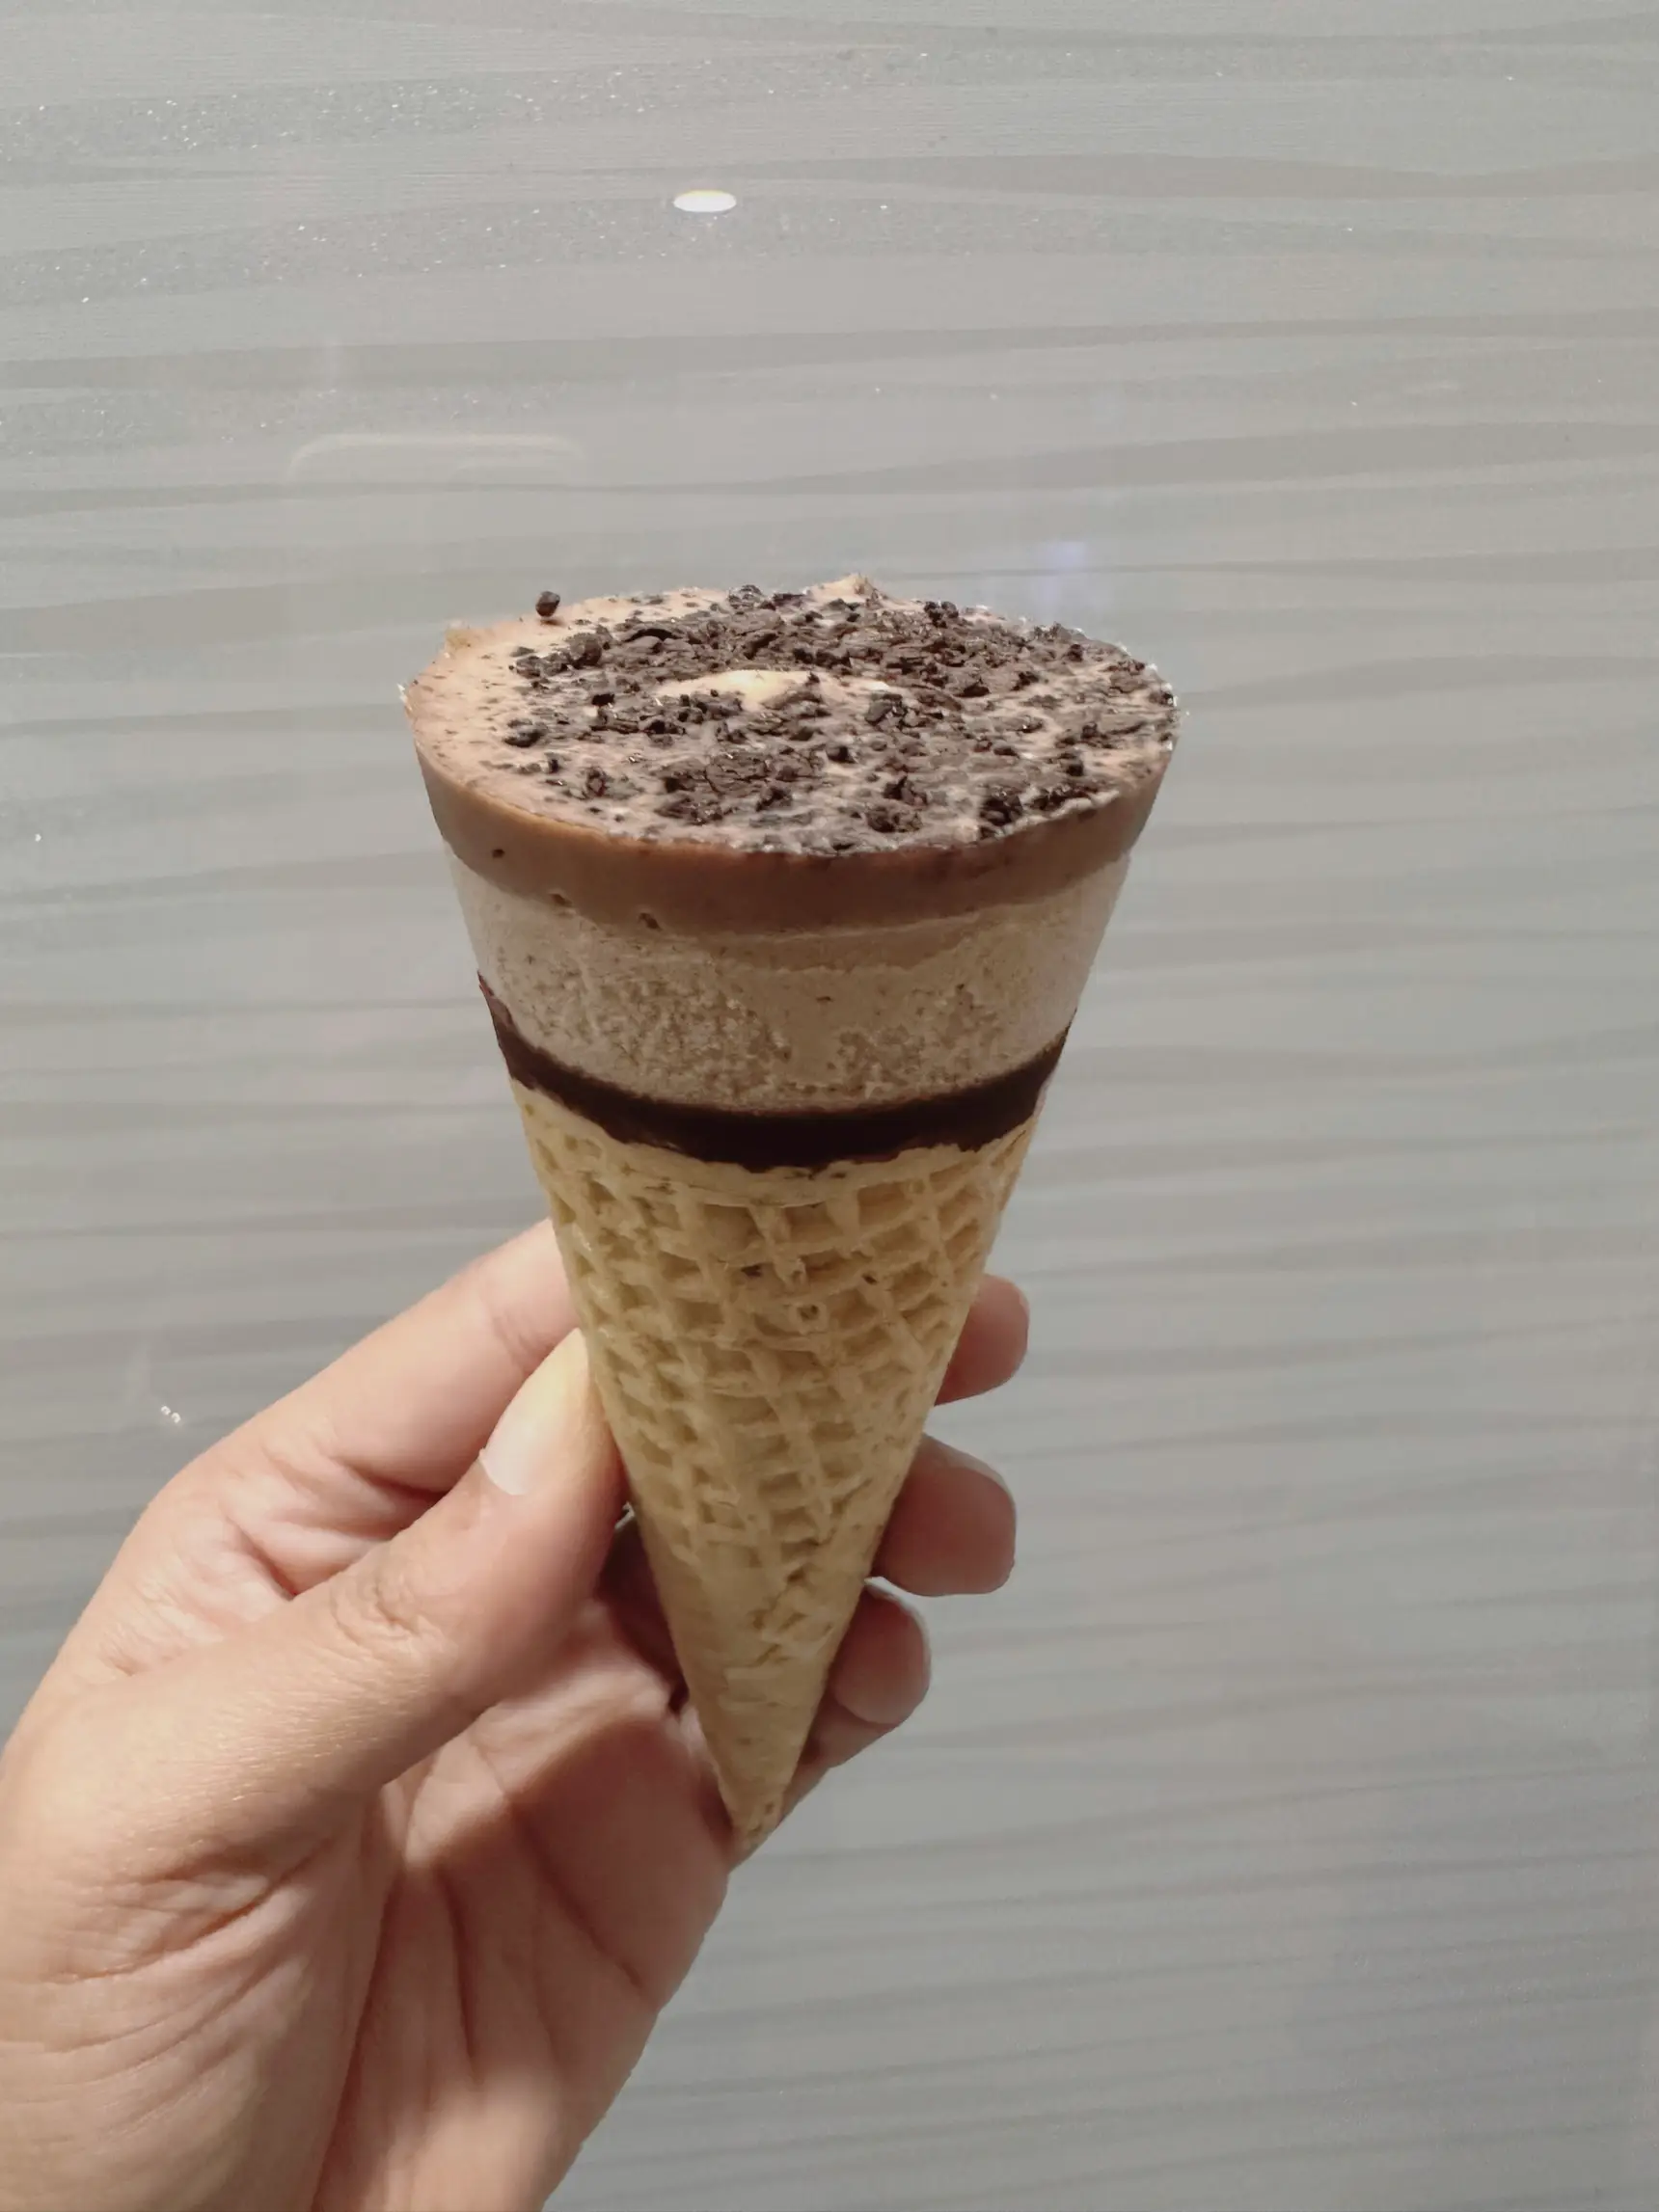 Kinder Bueno White Ice Cream Cone Review 